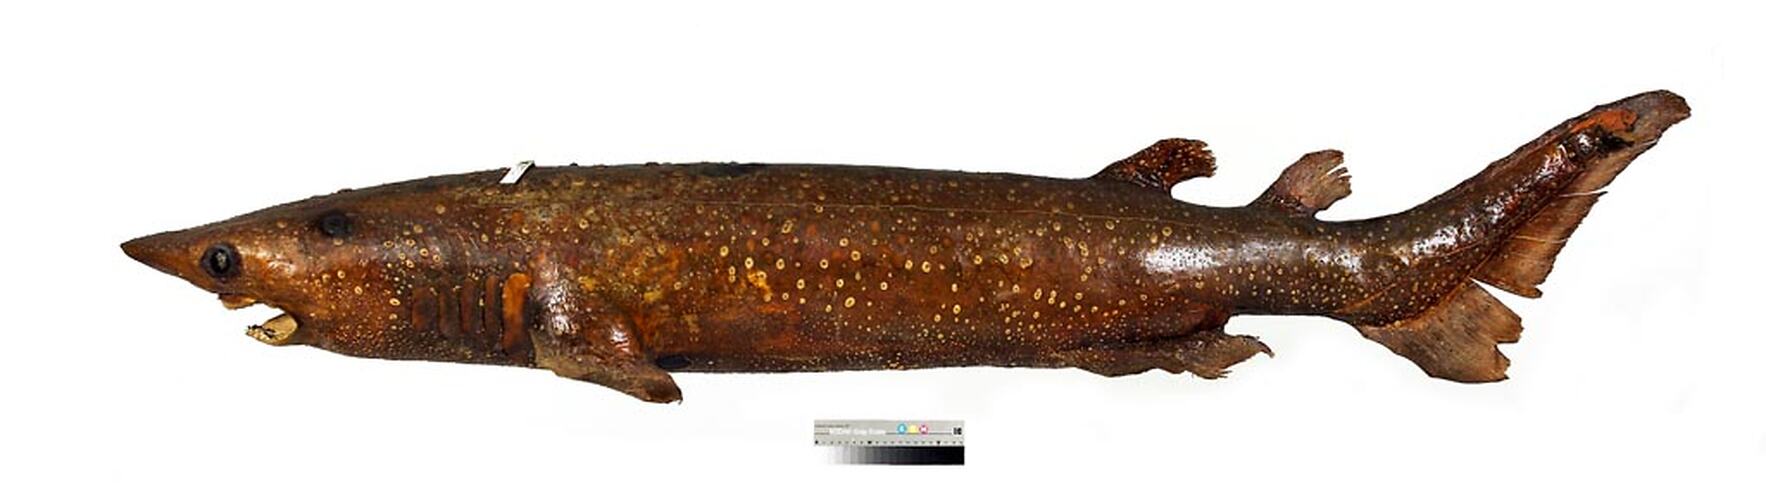 Dry shark specimen, left side view.